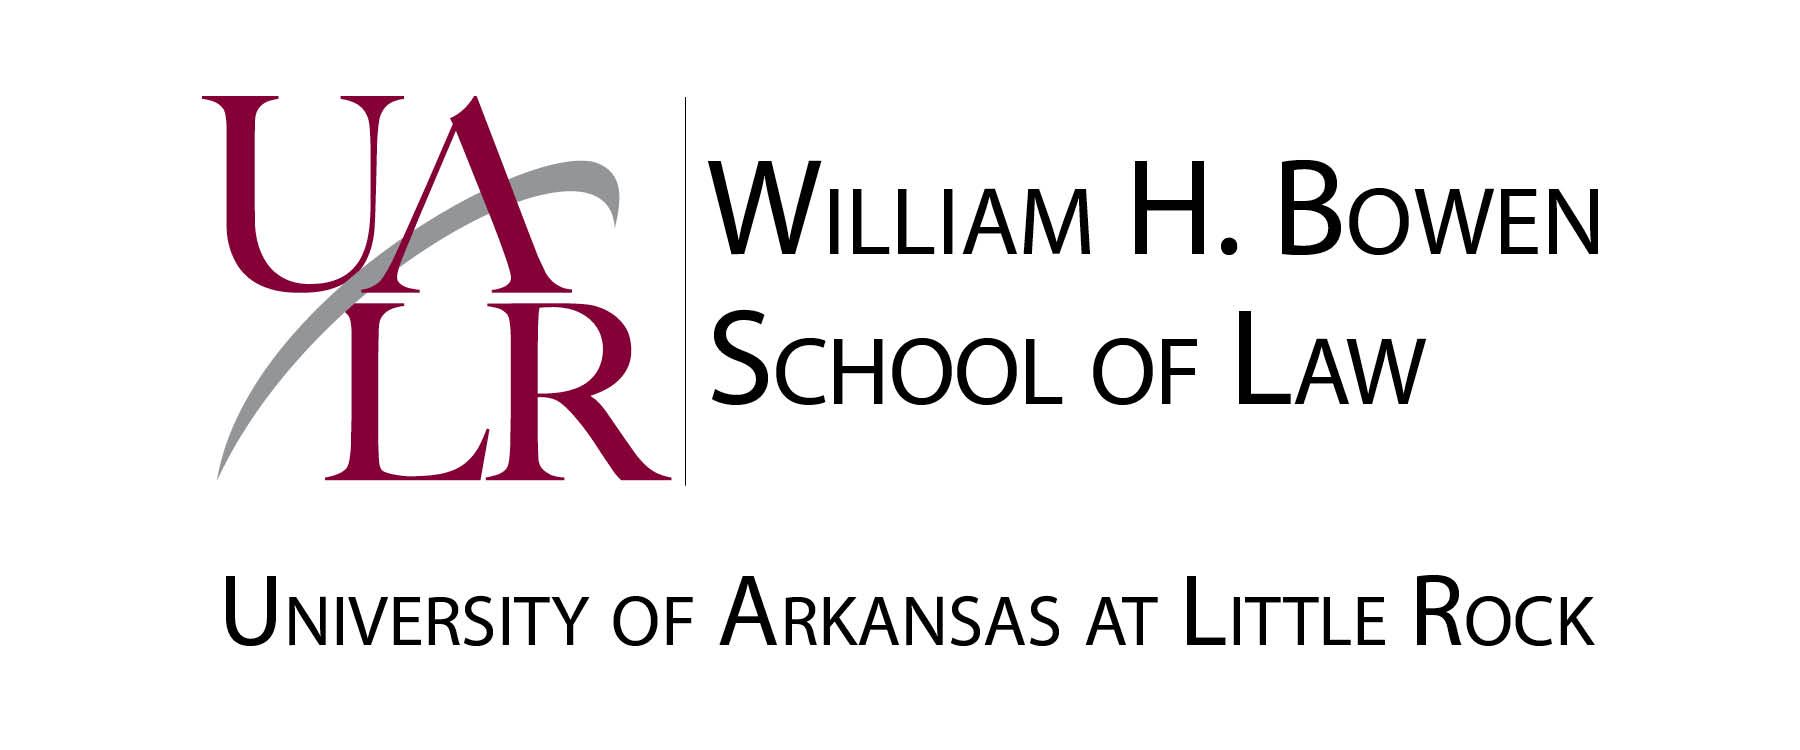 University of Arkansas at Little Rock Bowen School of Law